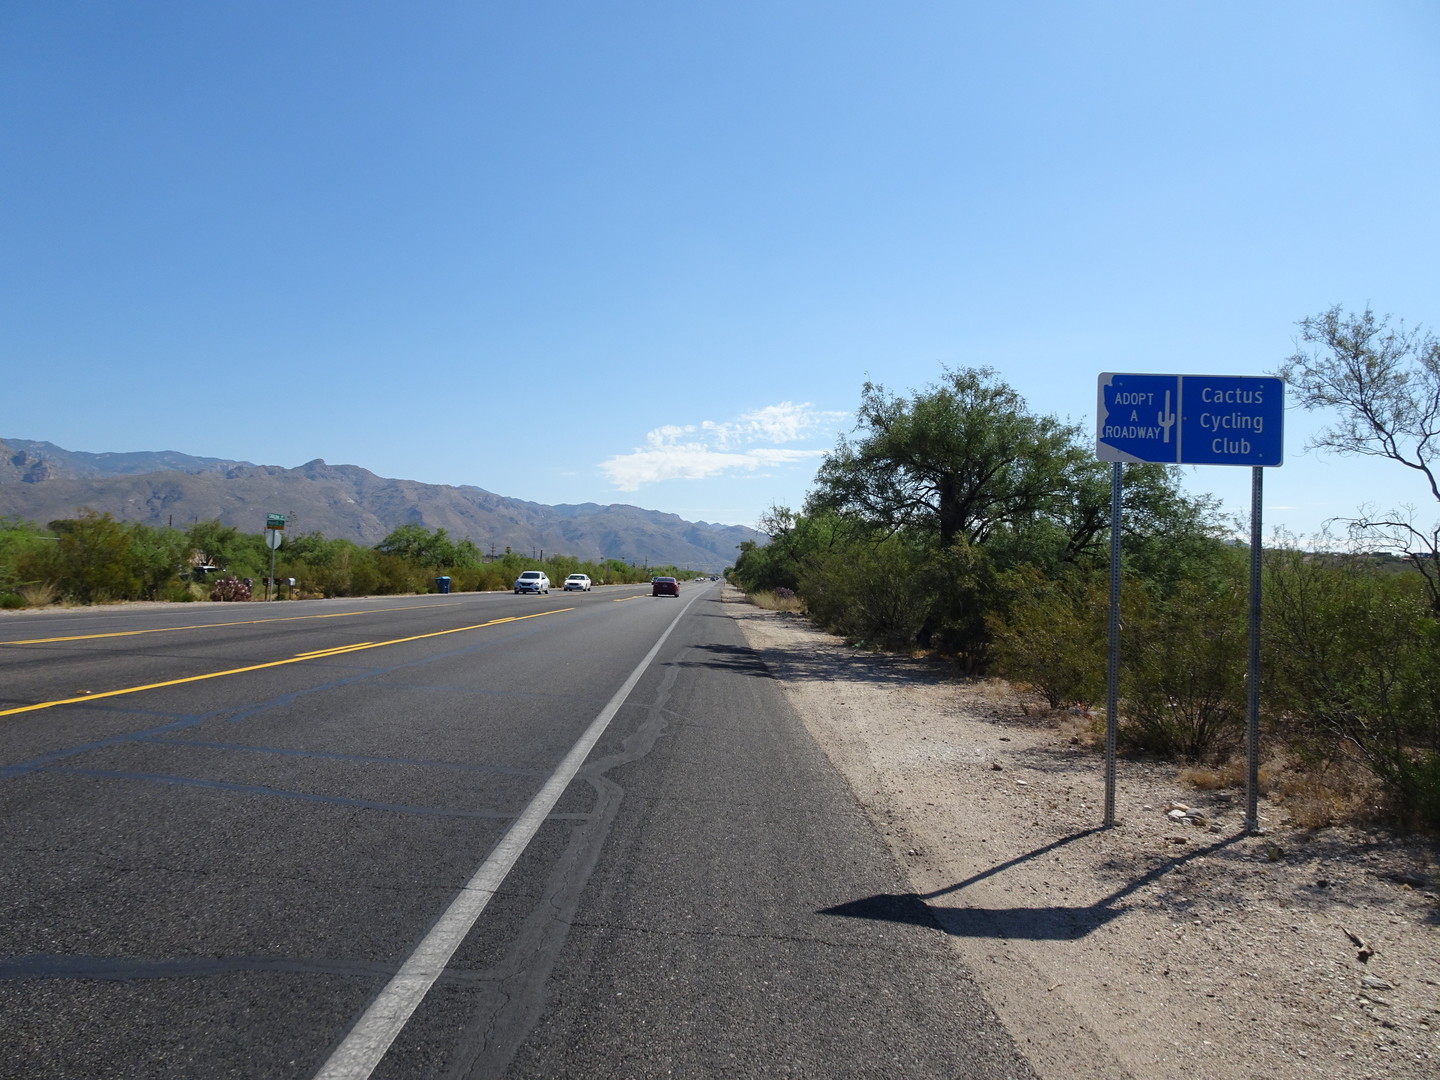 Der Cactus Cycling Club begrüßt uns auf dem East Catalina Highway, noch vor Beginn der eigentlichen Auffahrt.